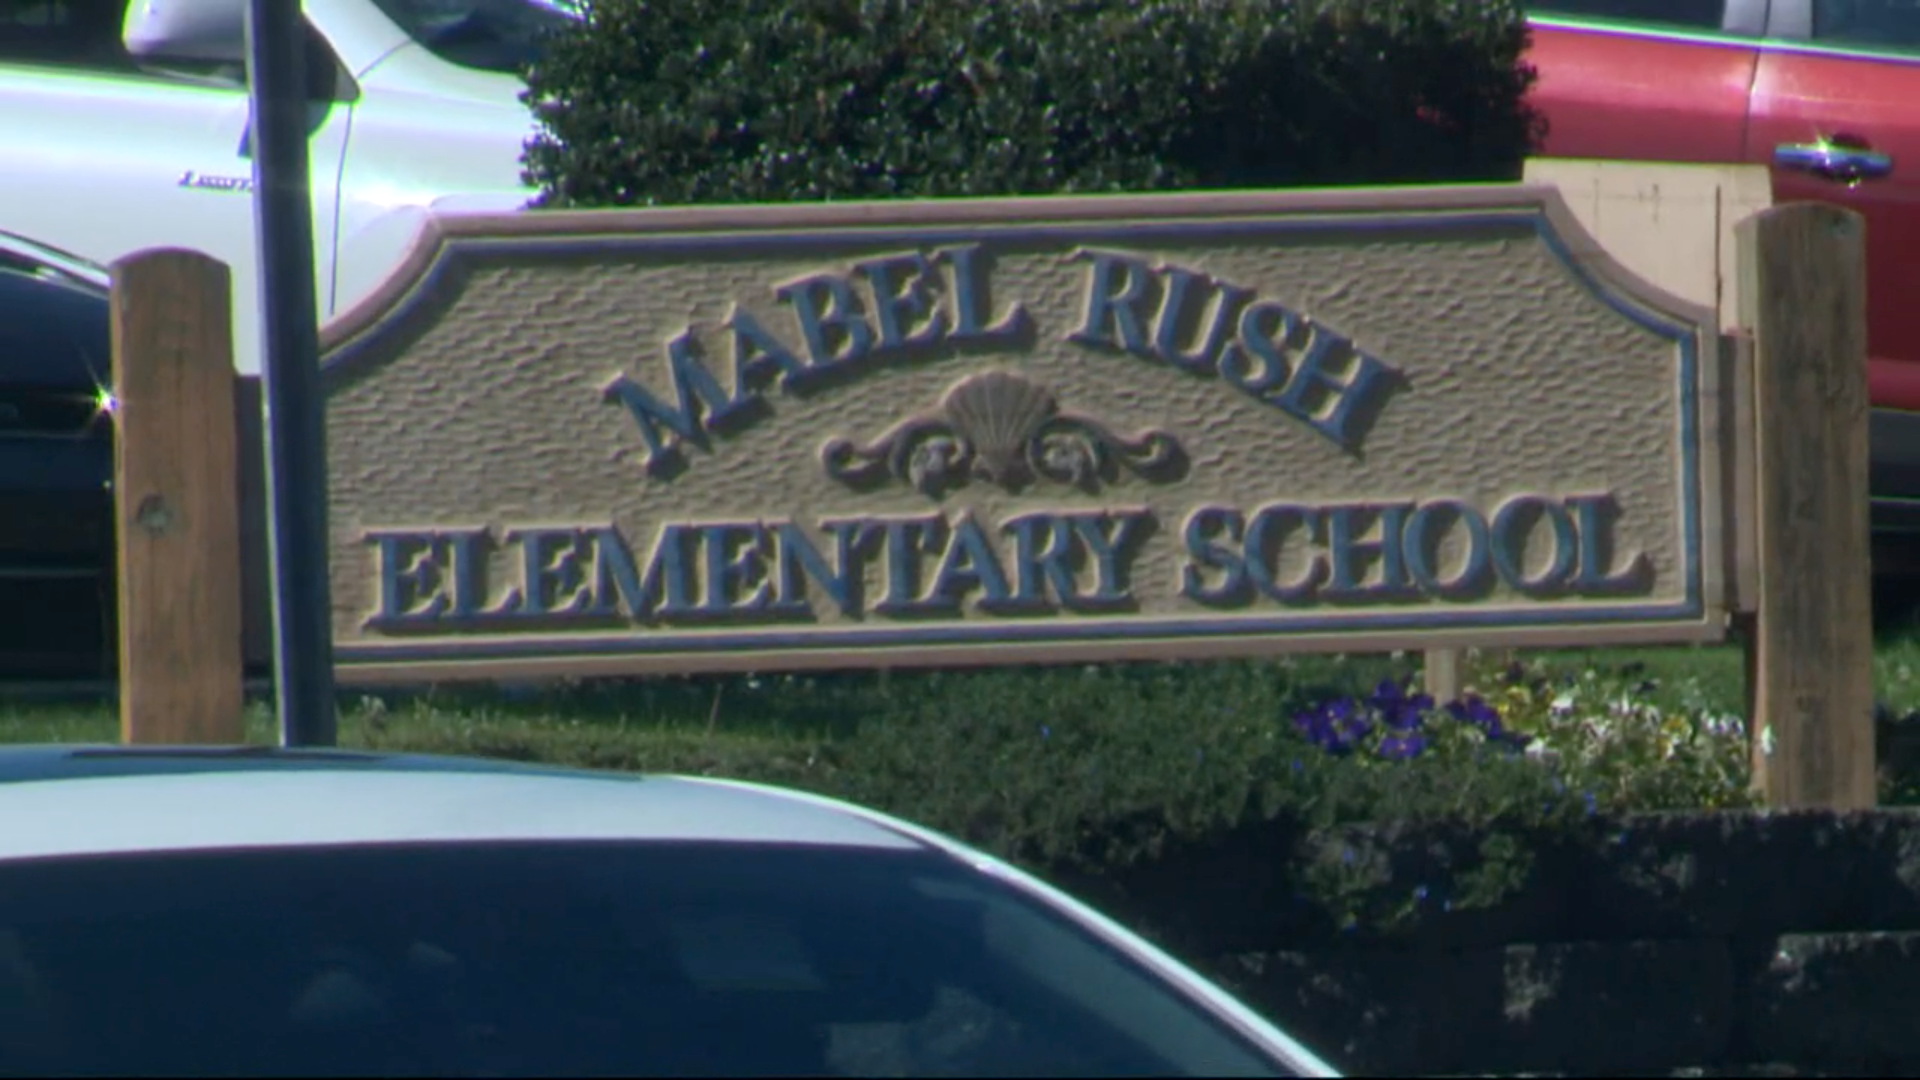 Mabel Rush Elementary School in Newberg